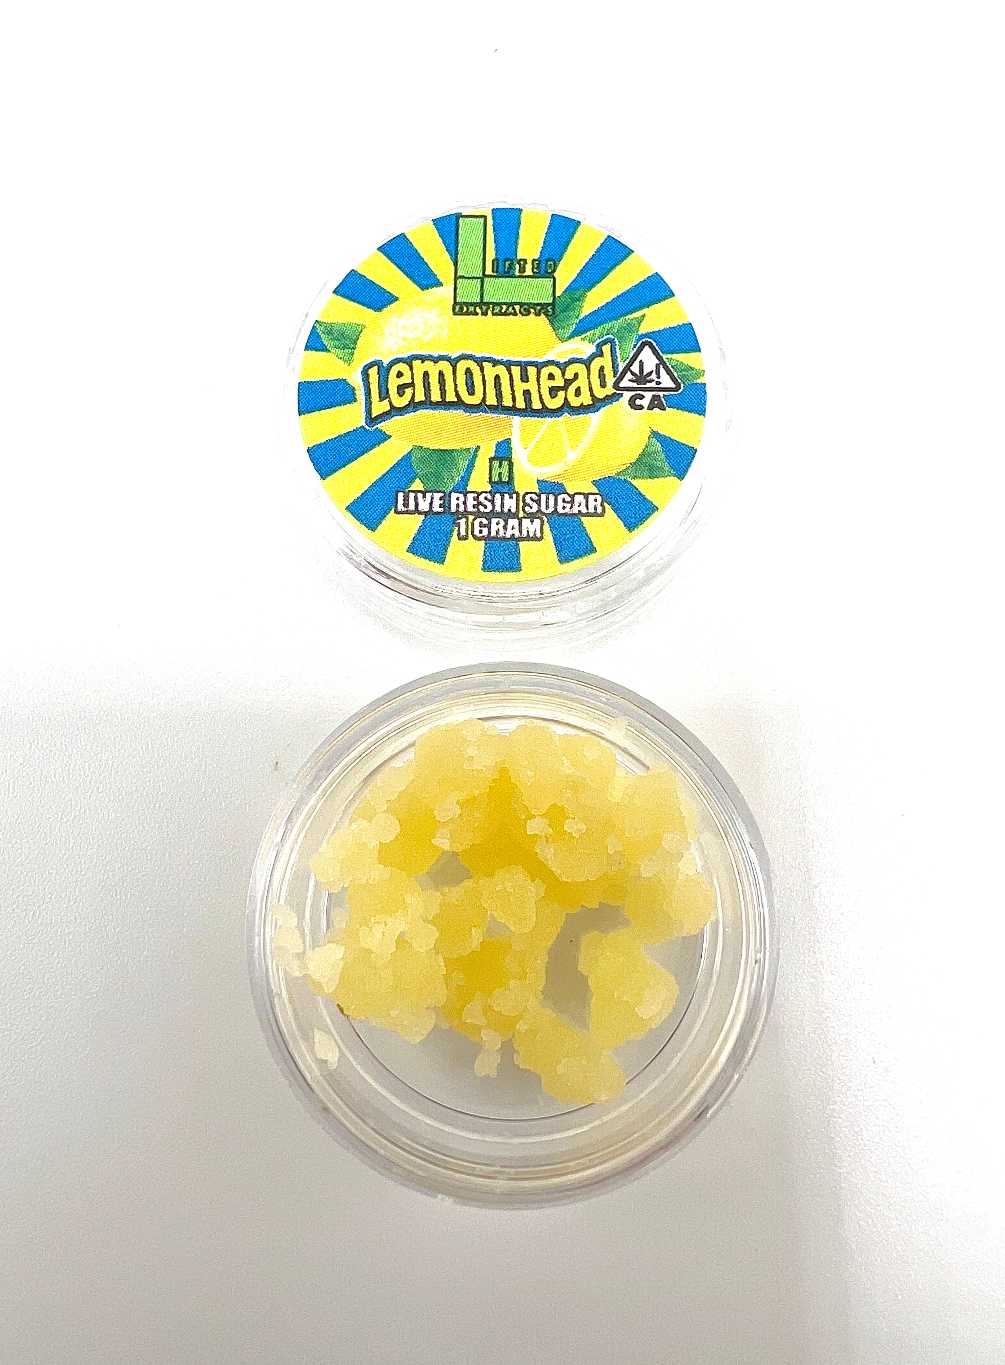 Lemonhead - Live Sugar Resin (1g)